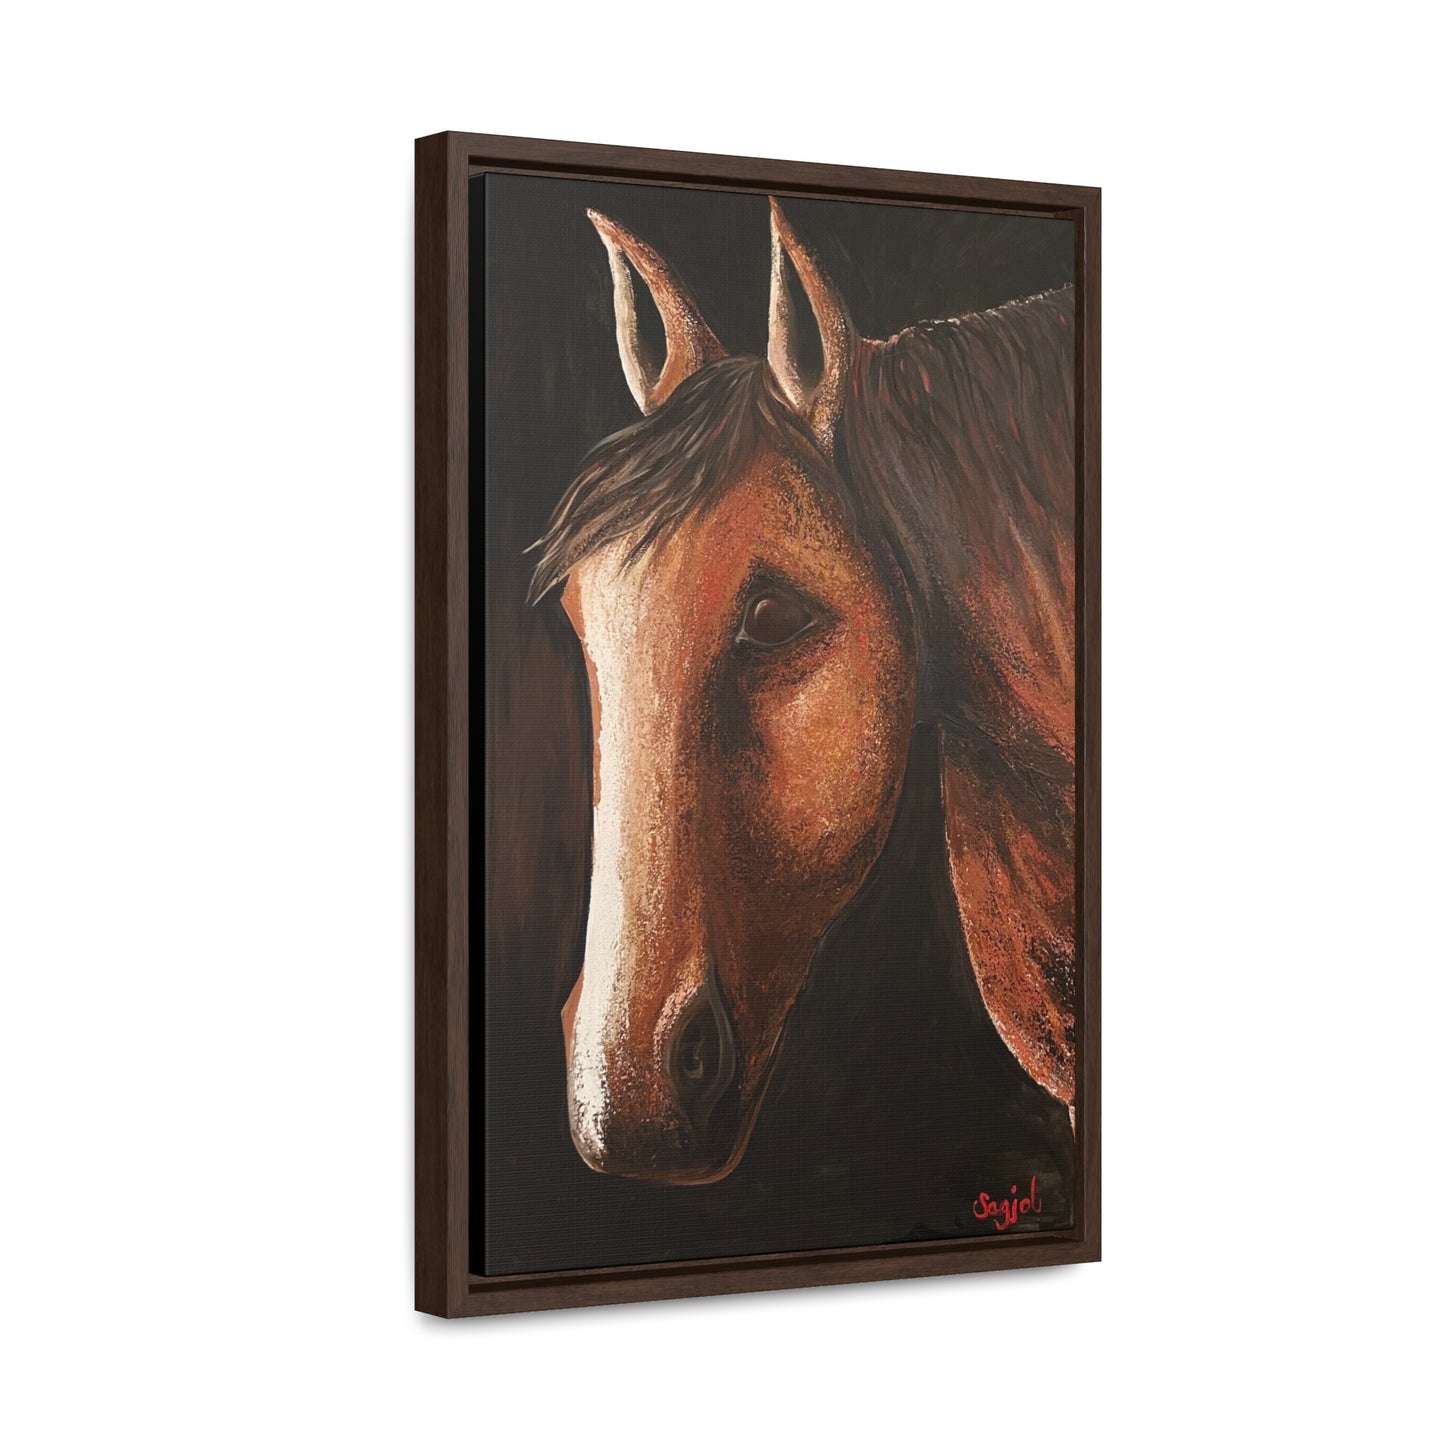 Framed Wall Art - Spirit - Equestrian Wall Art - Wall Art